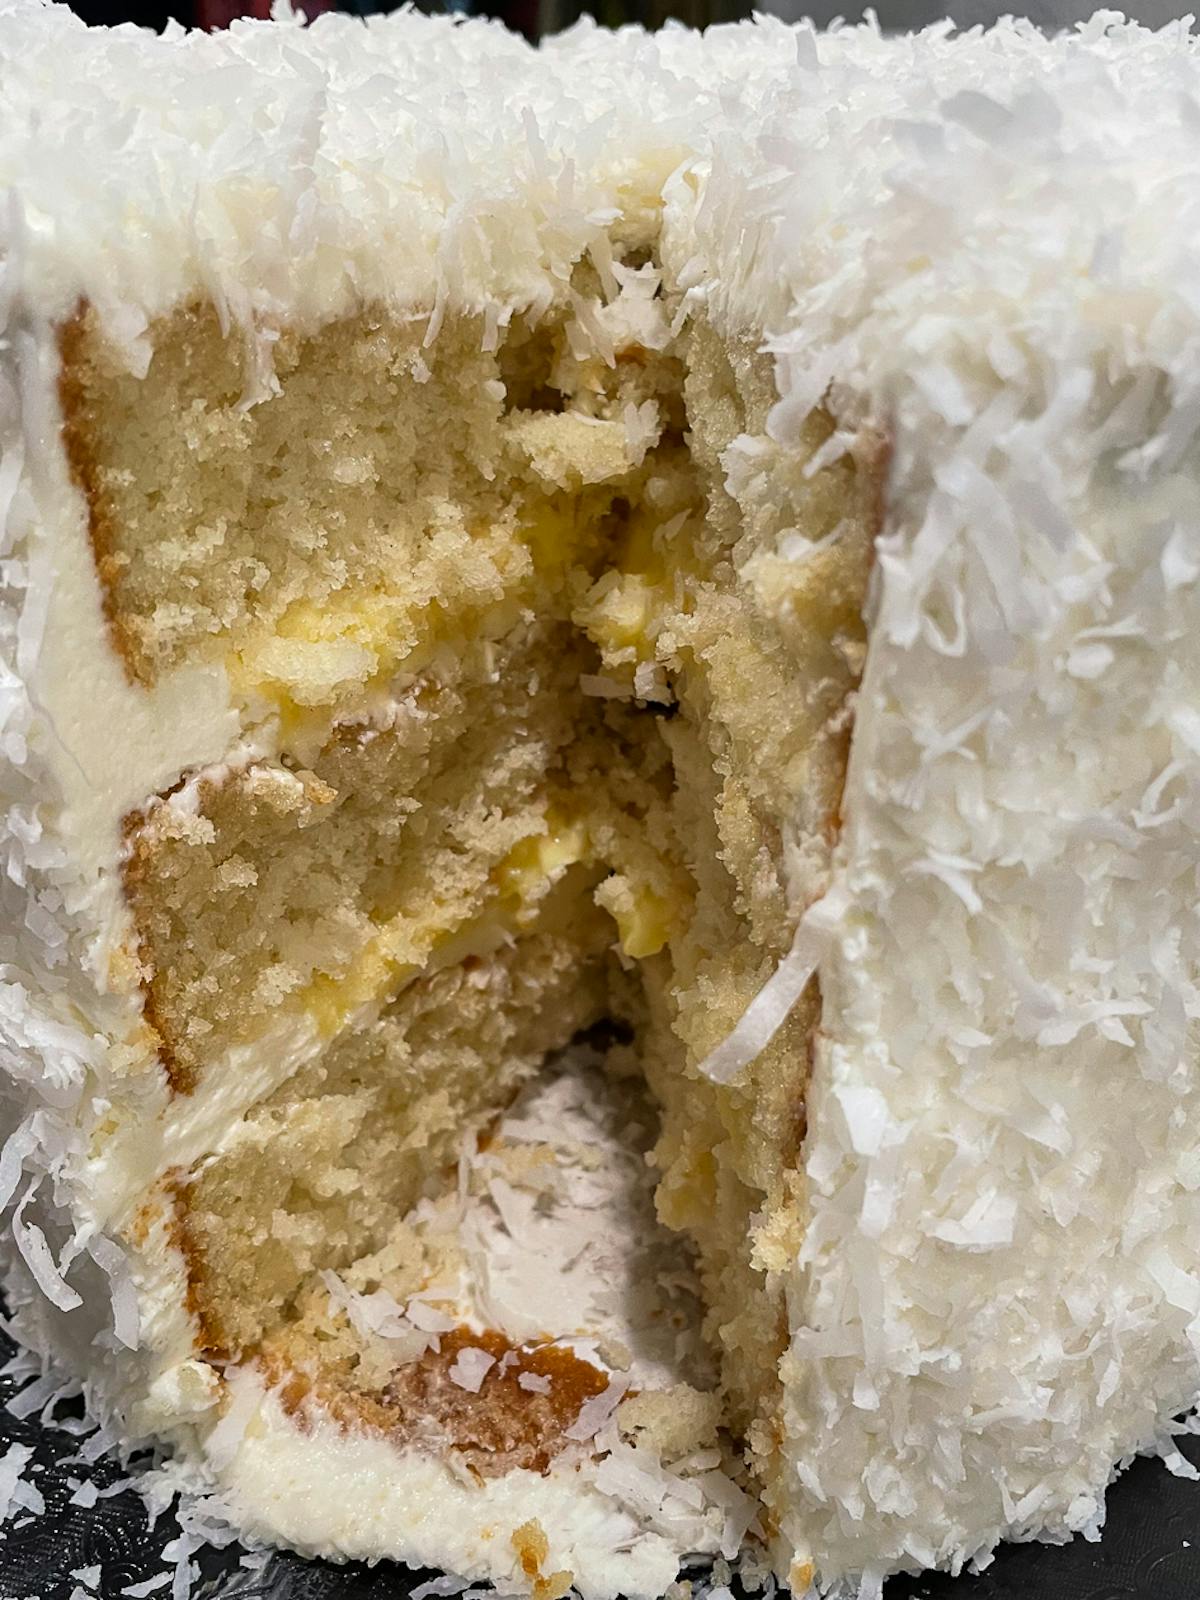 a close up of a piece of coconut cream cake